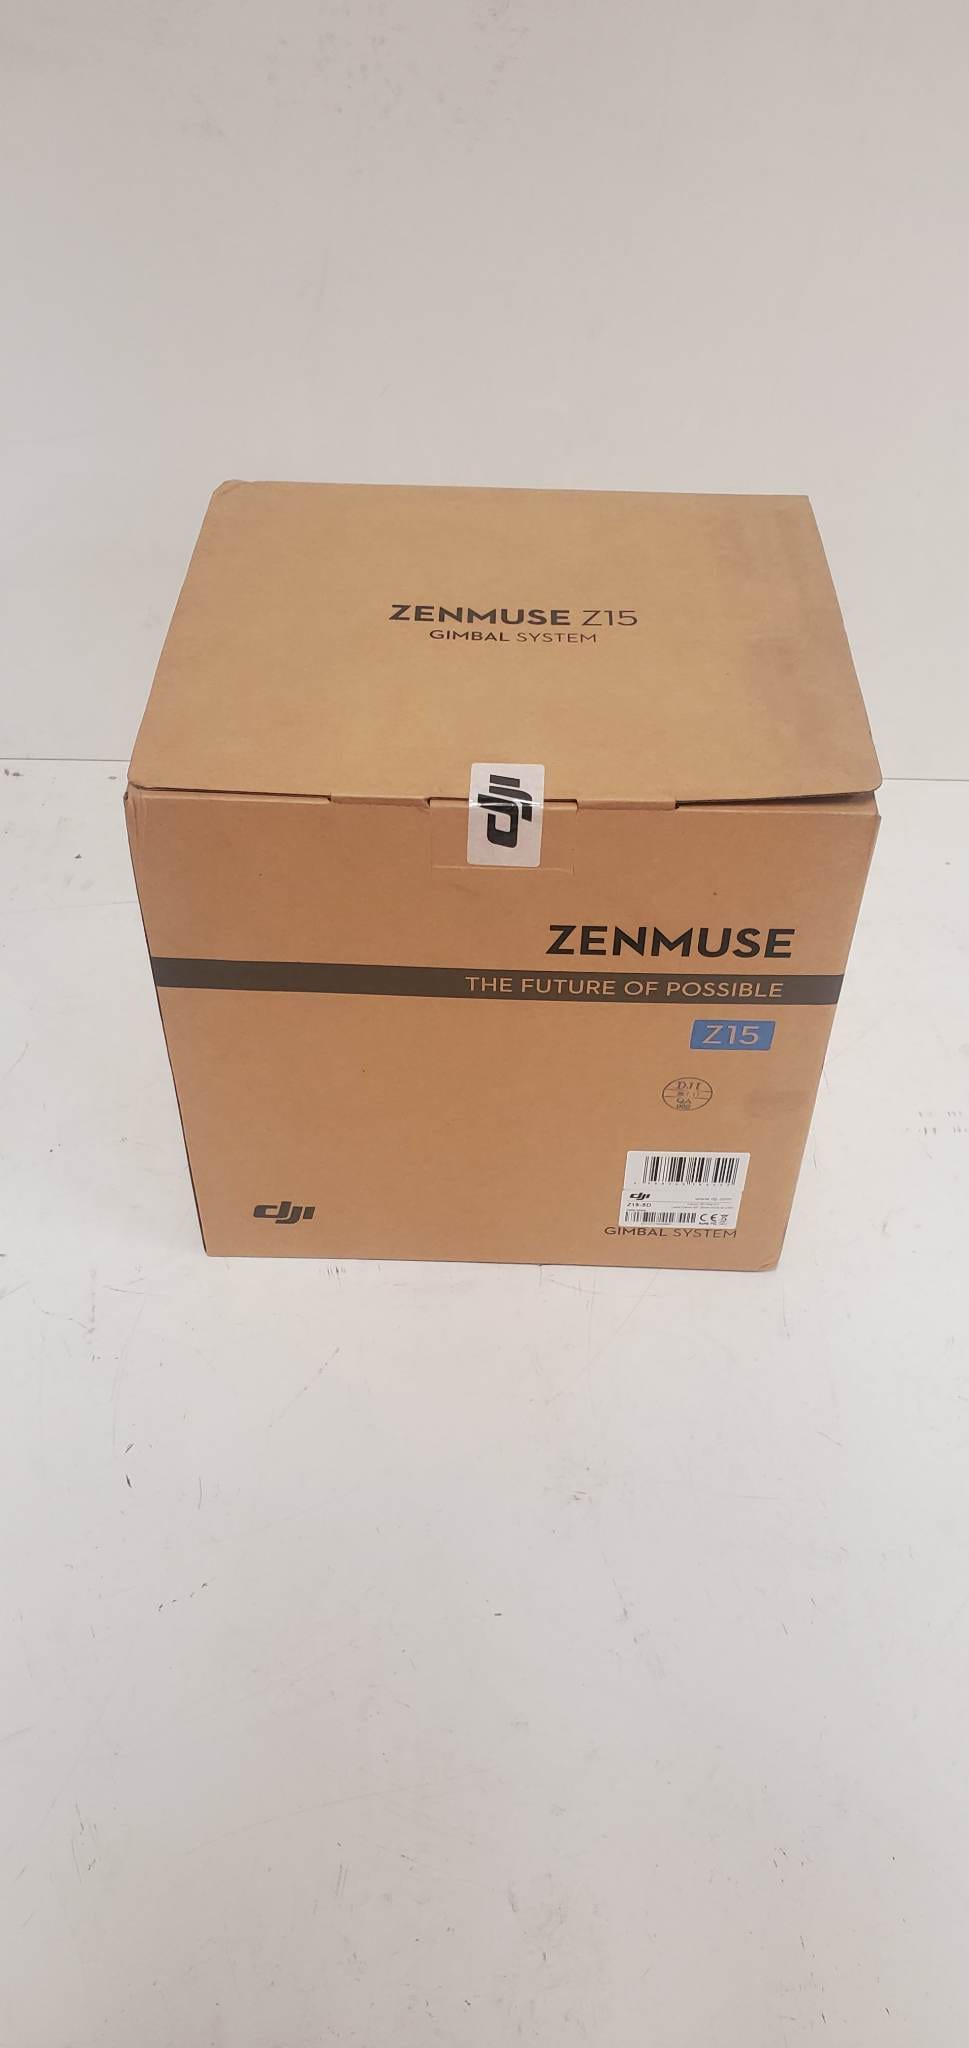 DJI Zenmuse Z15-5D Gimbal System #0236